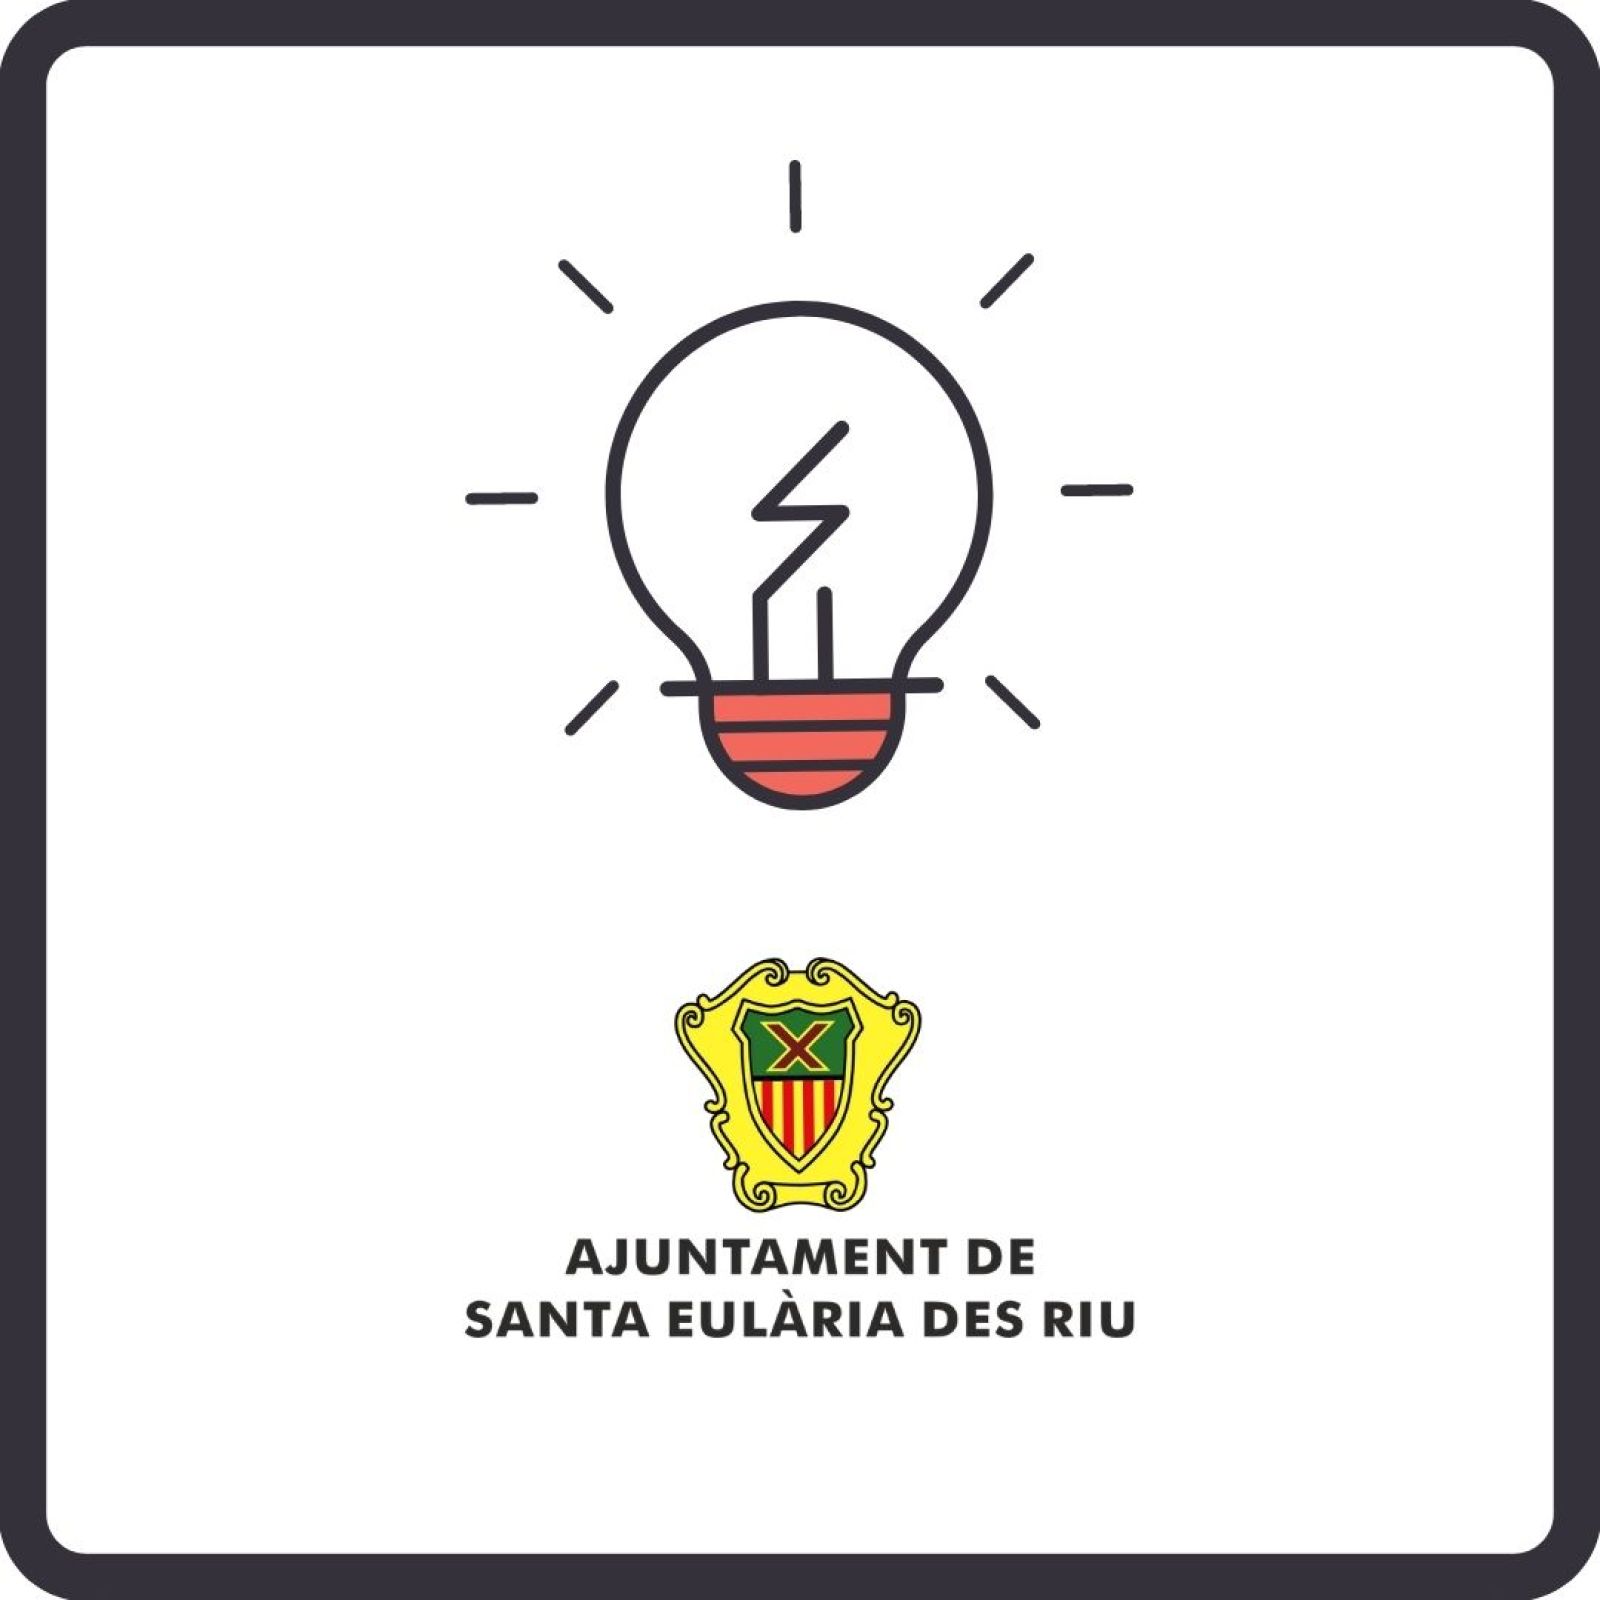 Corte temporal del suministro de energía eléctrica en diferentes zonas de Santa Eulària des Riu los días 9 y 11 de noviembre